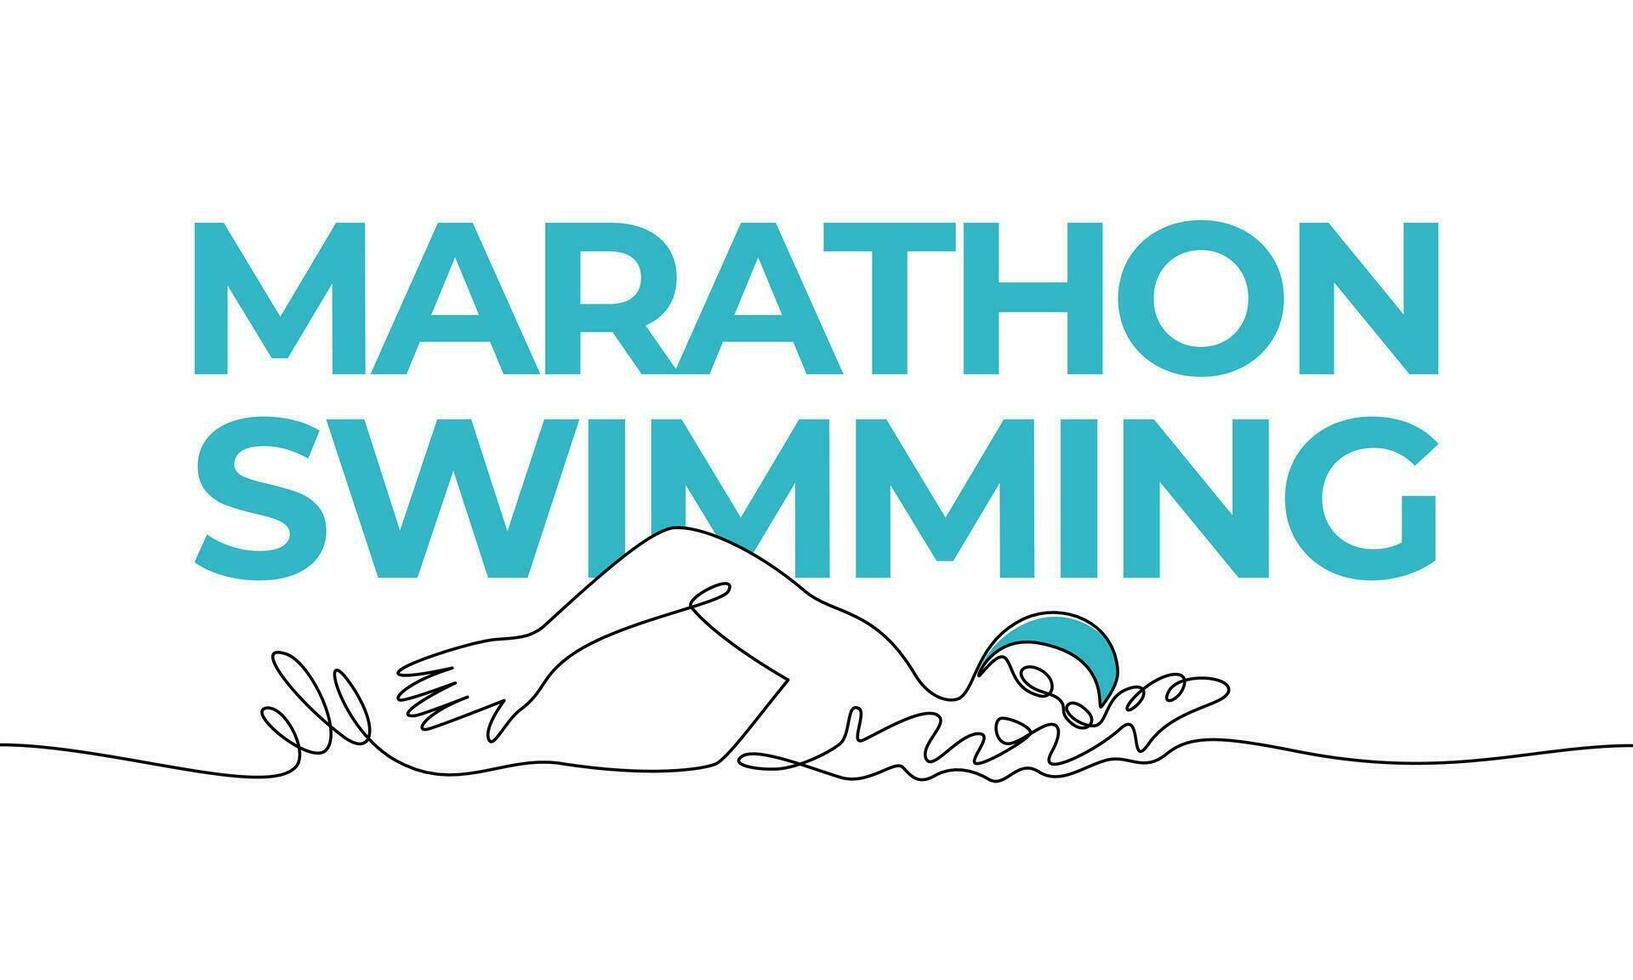 single doorlopend tekening. sport, triatlon, marathon zwemmen. gekleurde elementen en titel. een lijn vector illustratie